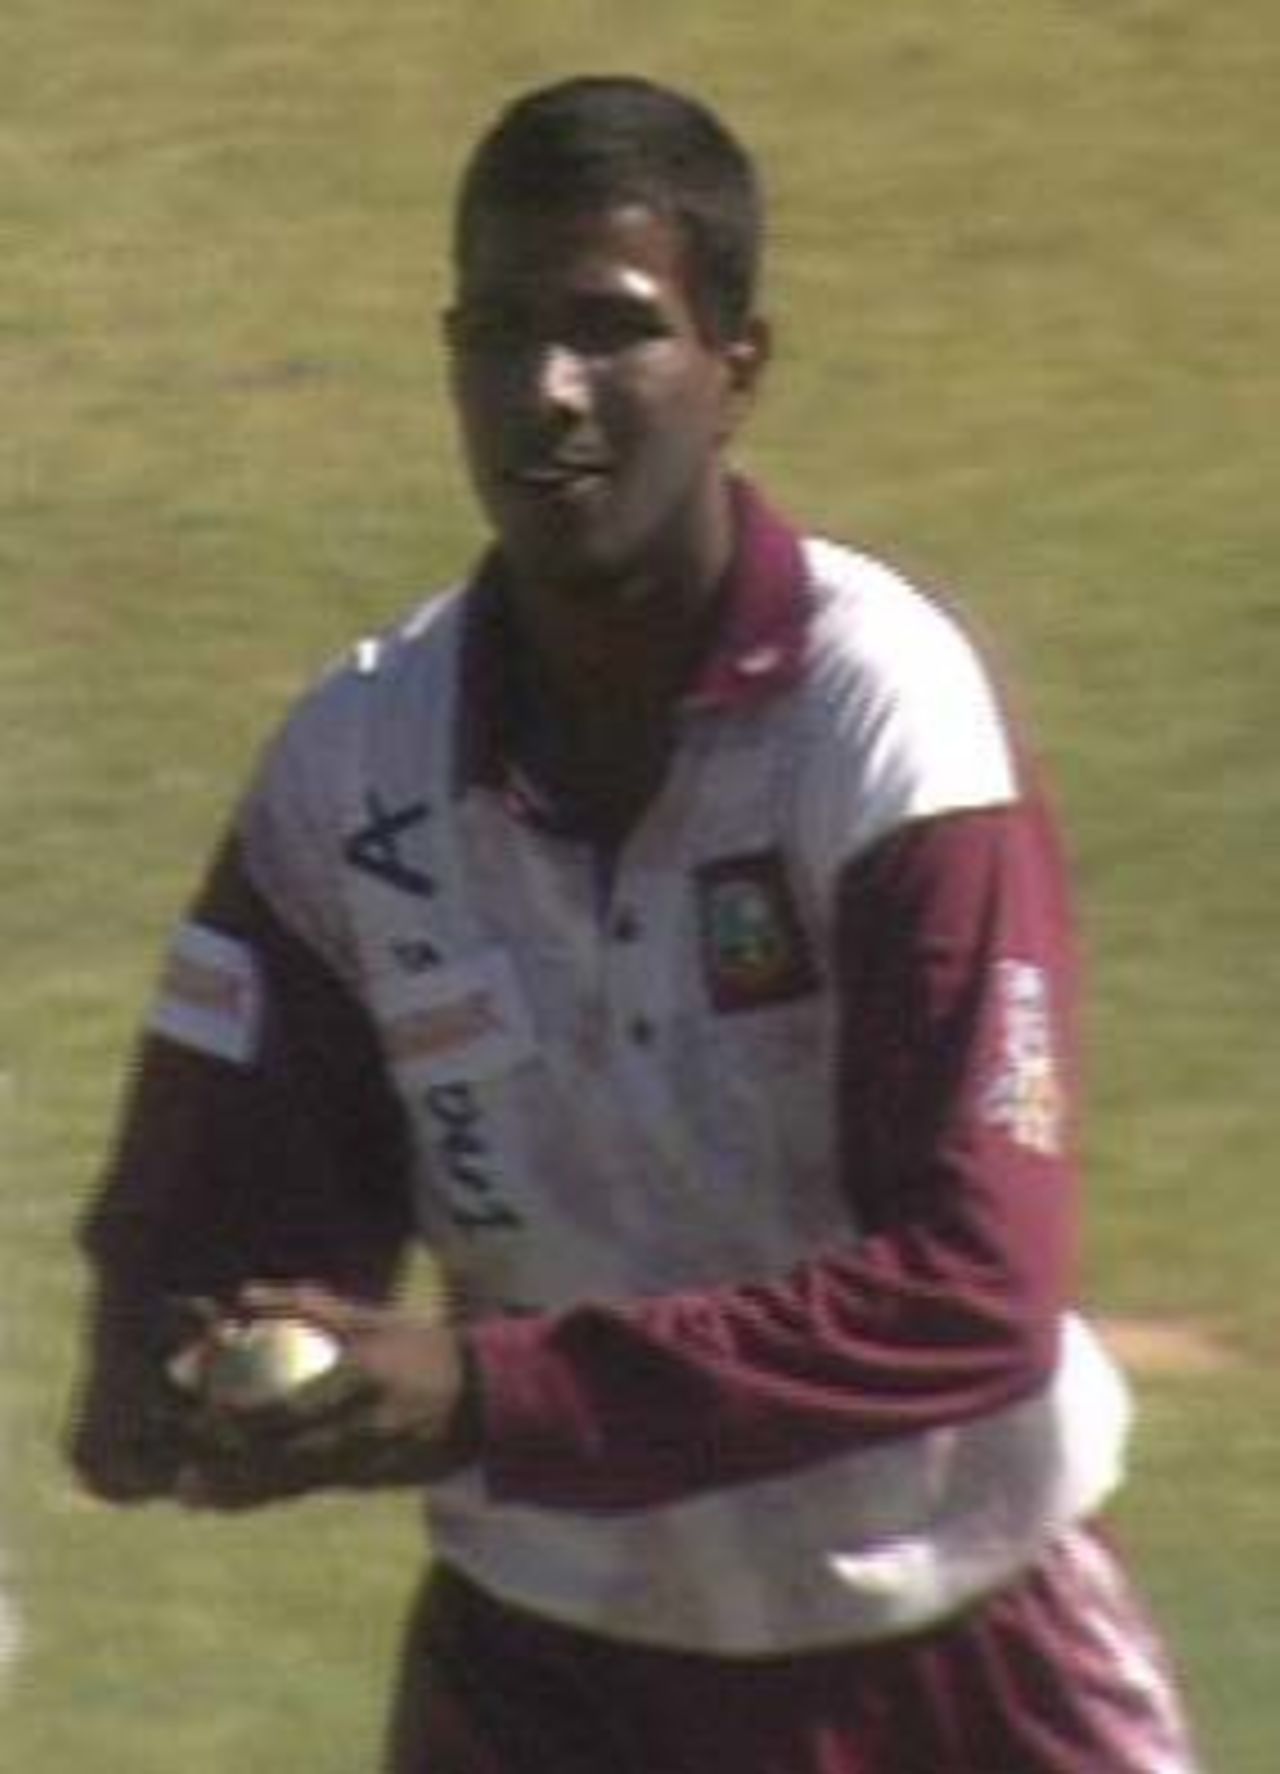 Dinanath Ramnarine, Boland v West Indies 'A' v Boland at Boland Bank Park, Paarl, 26 November 1997